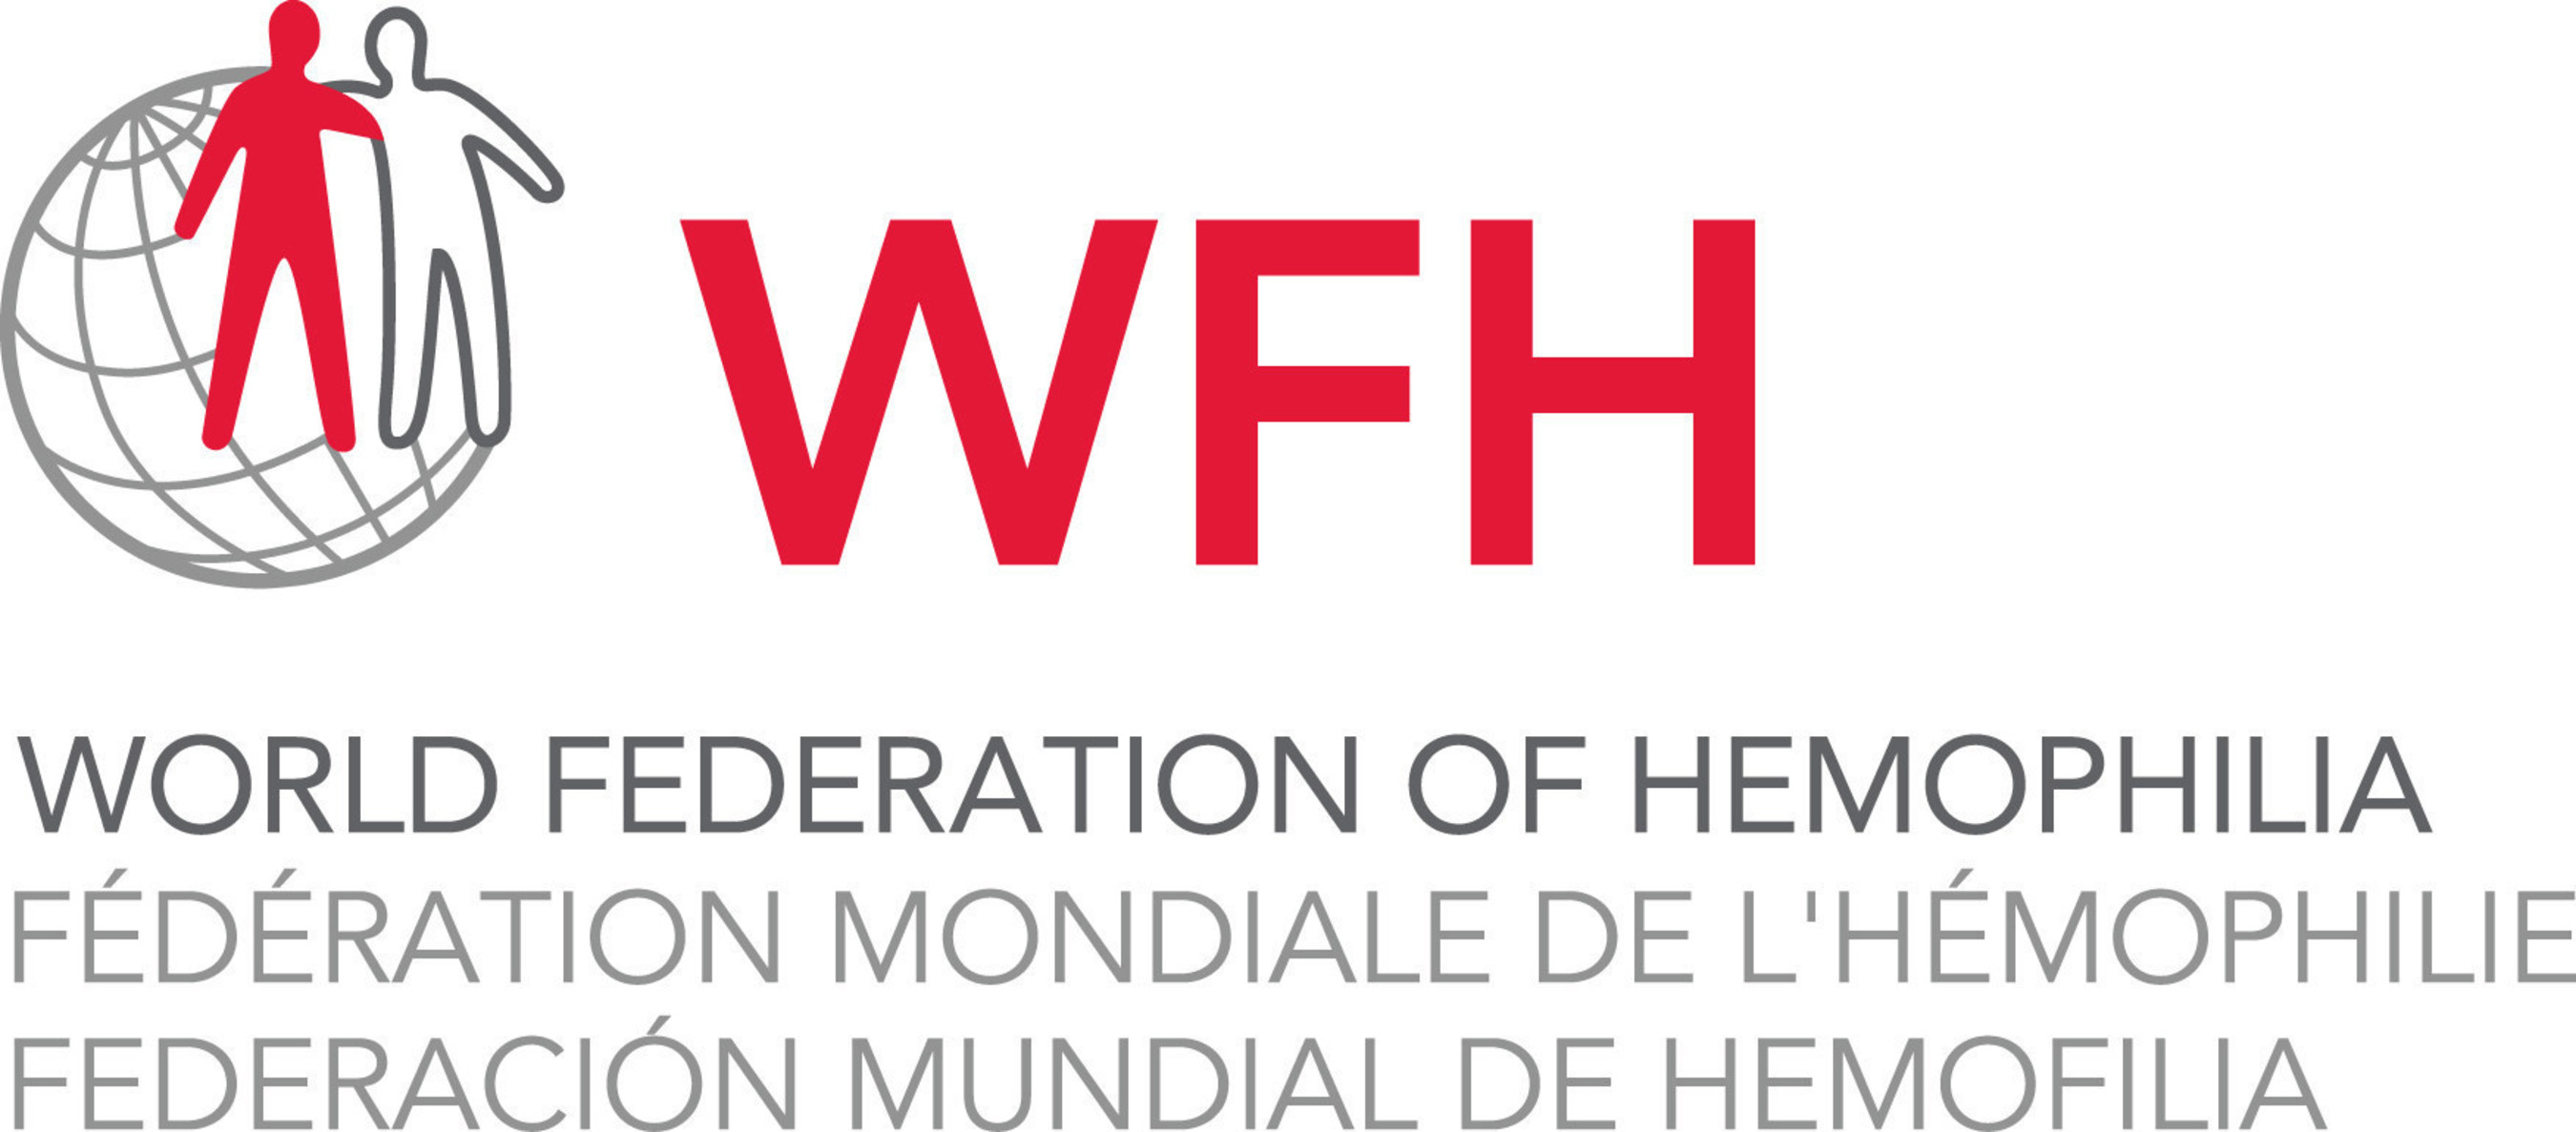 World Federation of Hemophilia (www.wfh.org)